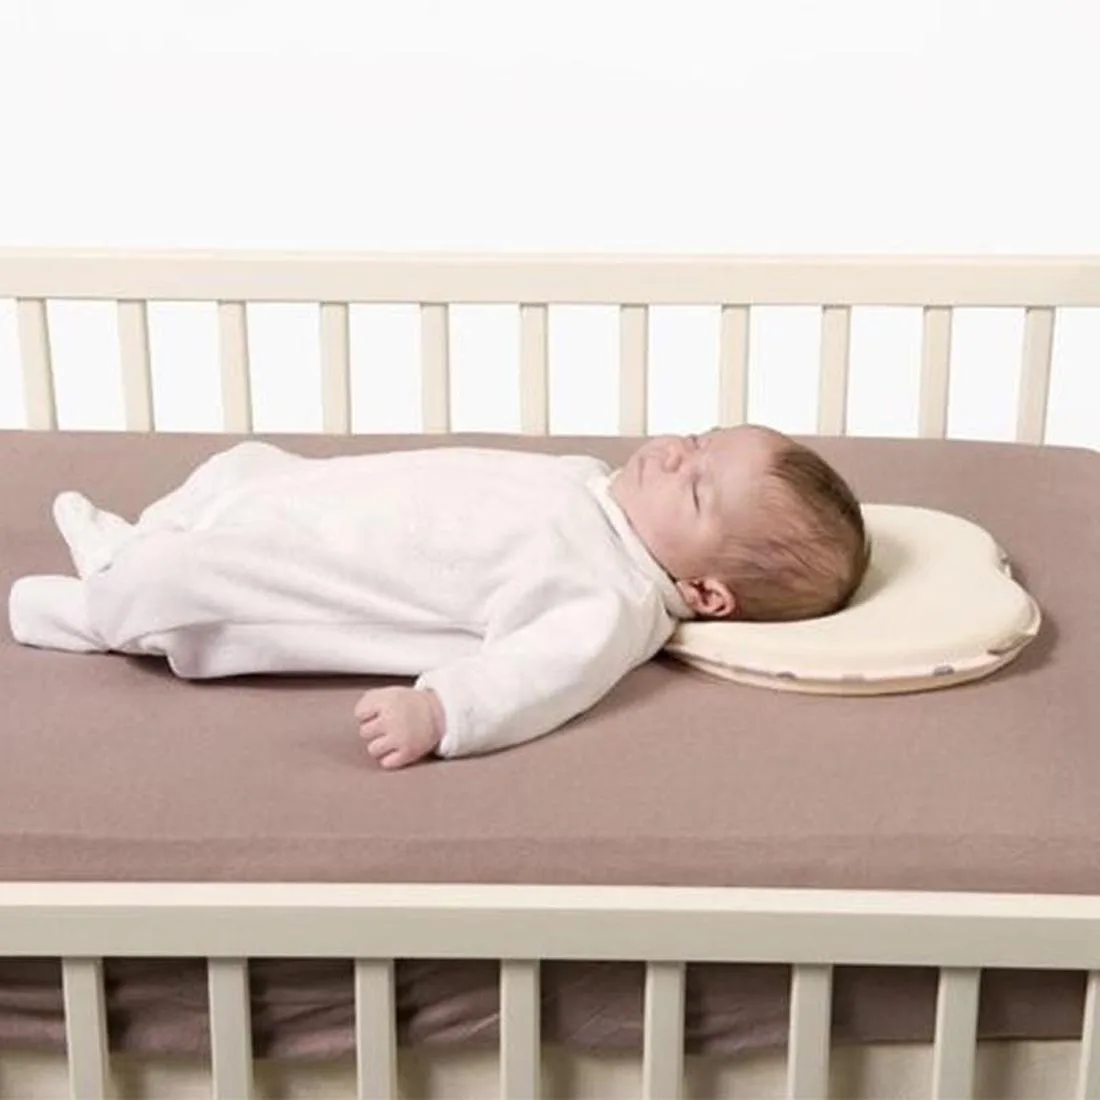 Поддержка головы новорожденного ребенка дети в форме позиционера сна подушка для защиты от опрокидывания Подушка младенца предотвращает